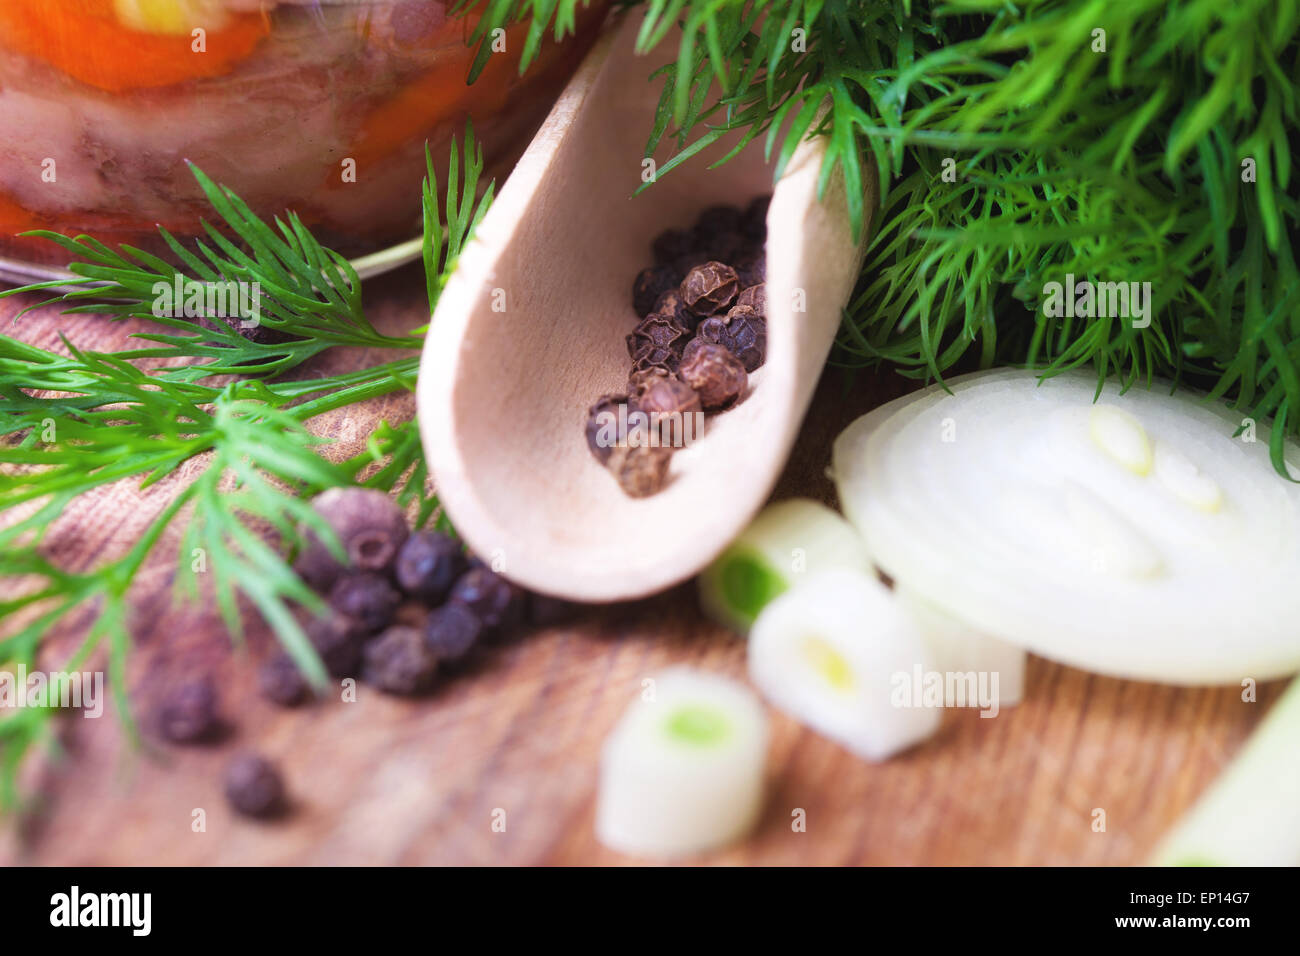 Hierbas aromáticas, pimientos y cebollas en una tabla, close-up Foto de stock